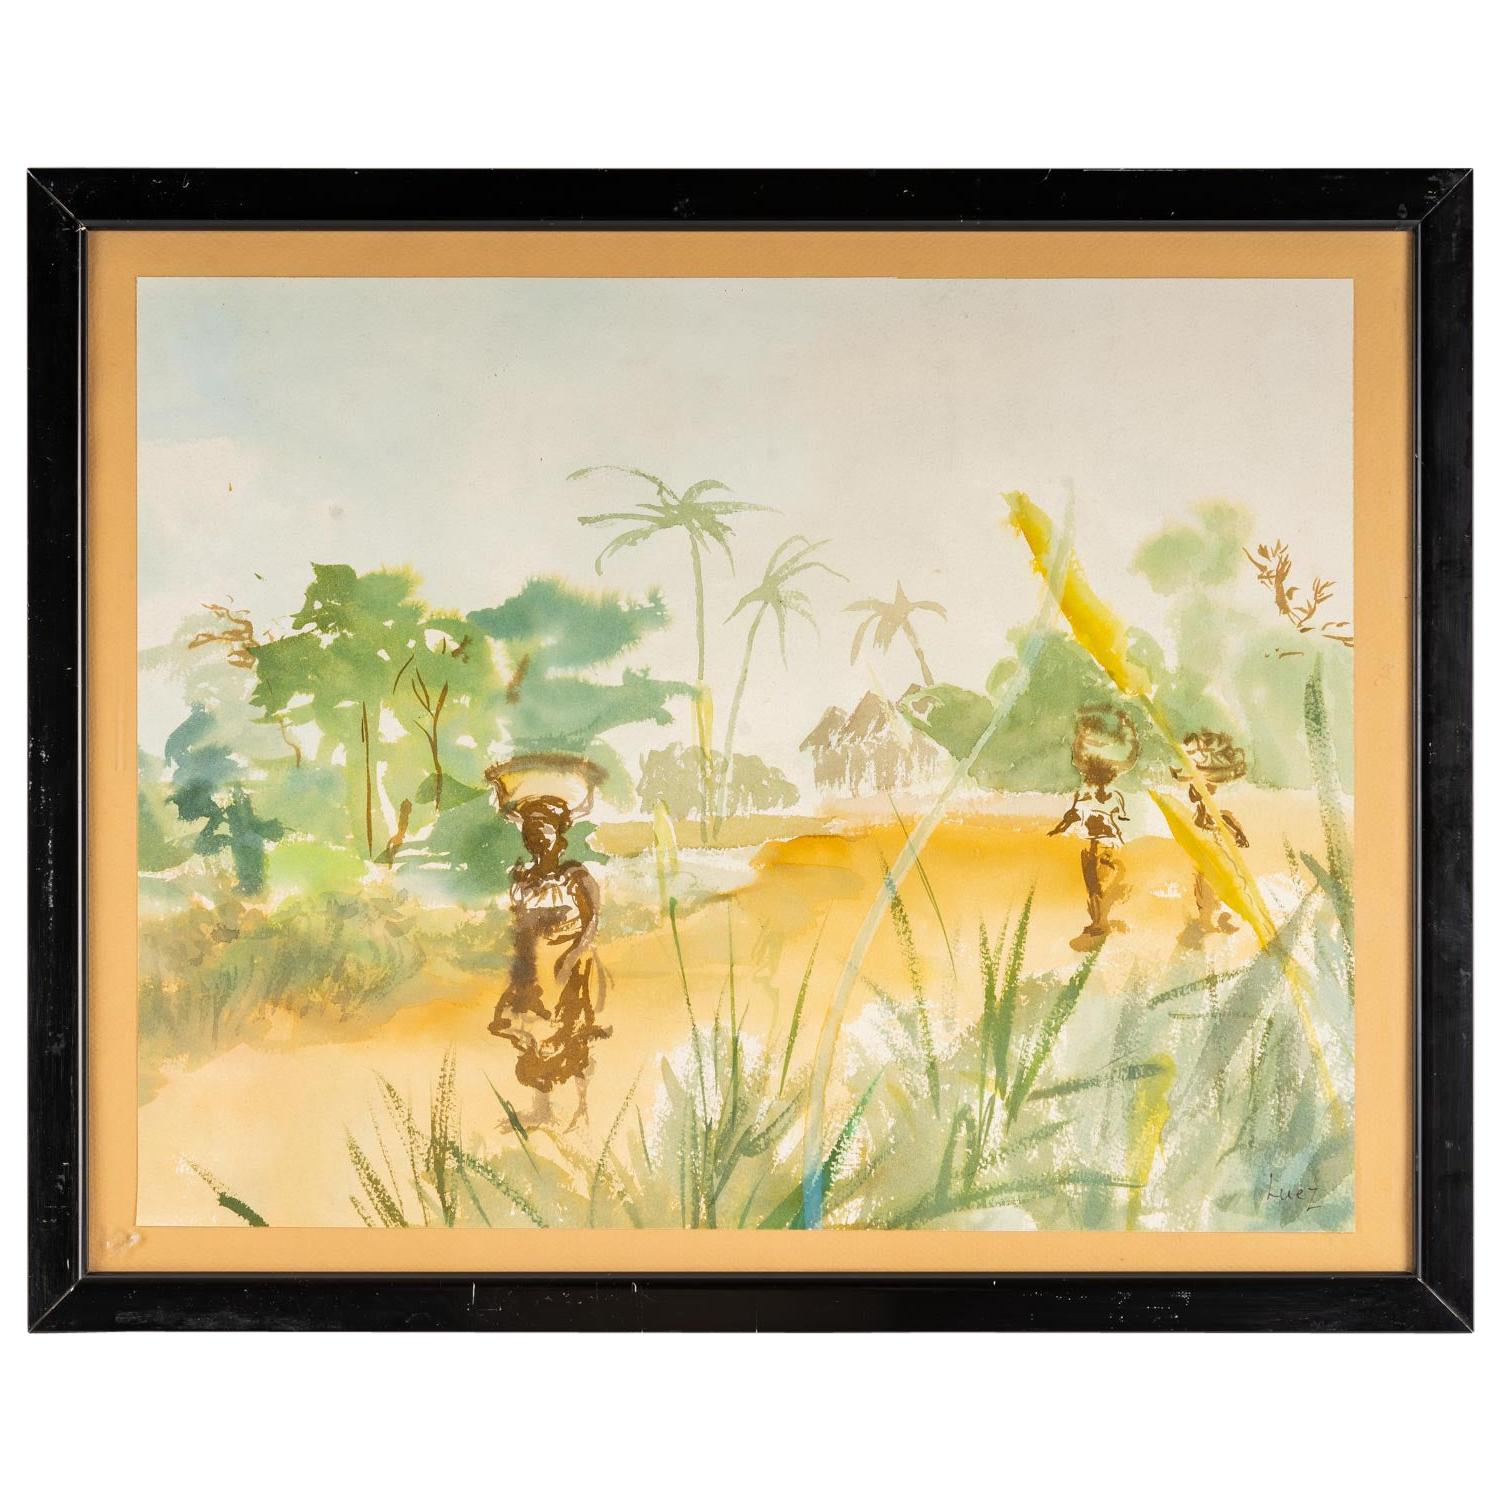 Watercolour on Luez paper, African landscape, framed under glass, 20th century.
Measures: H: 41.5 cm, W: 51.5 cm, D: 3 cm.